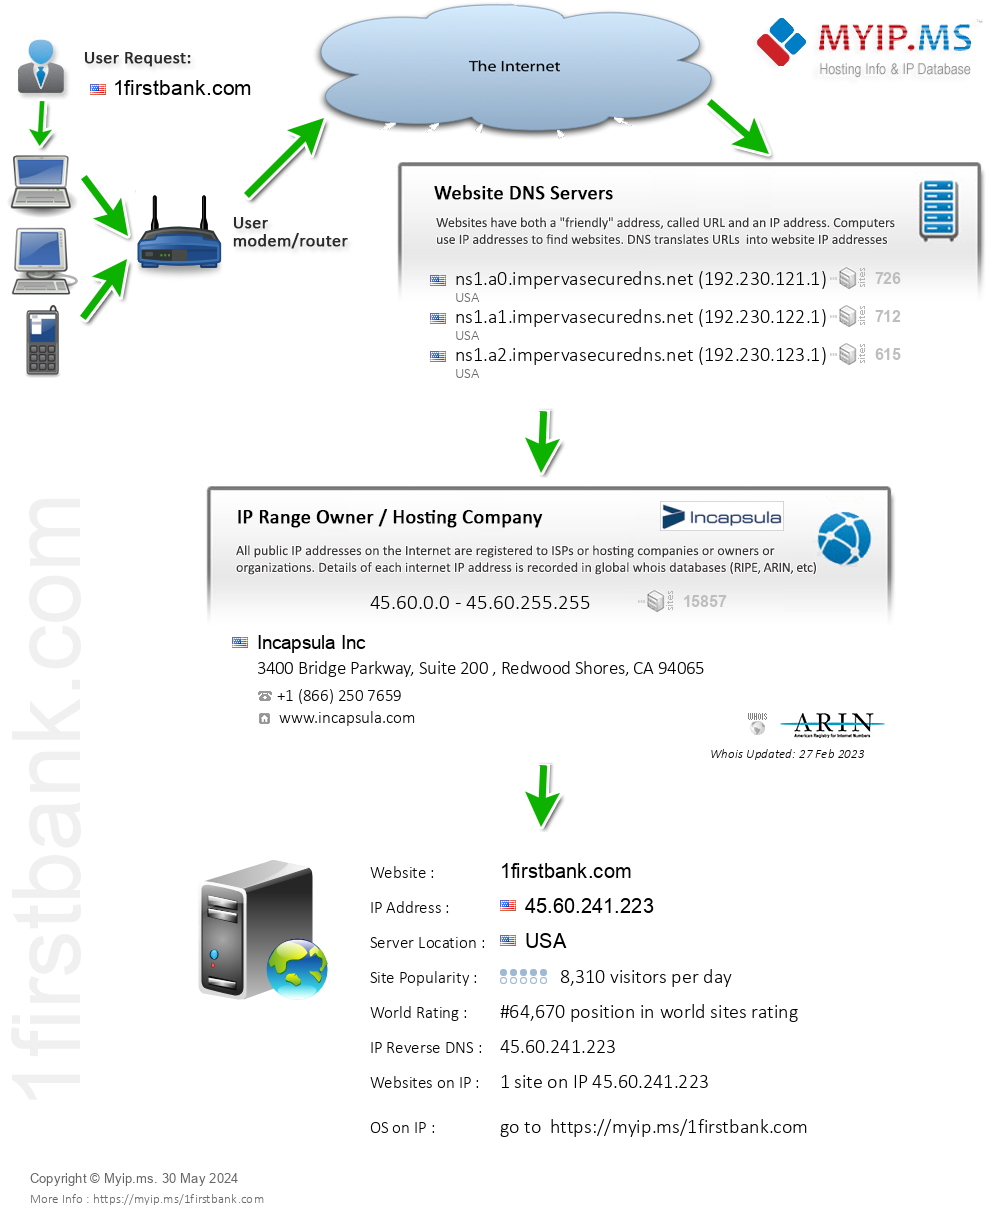 1firstbank.com - Website Hosting Visual IP Diagram